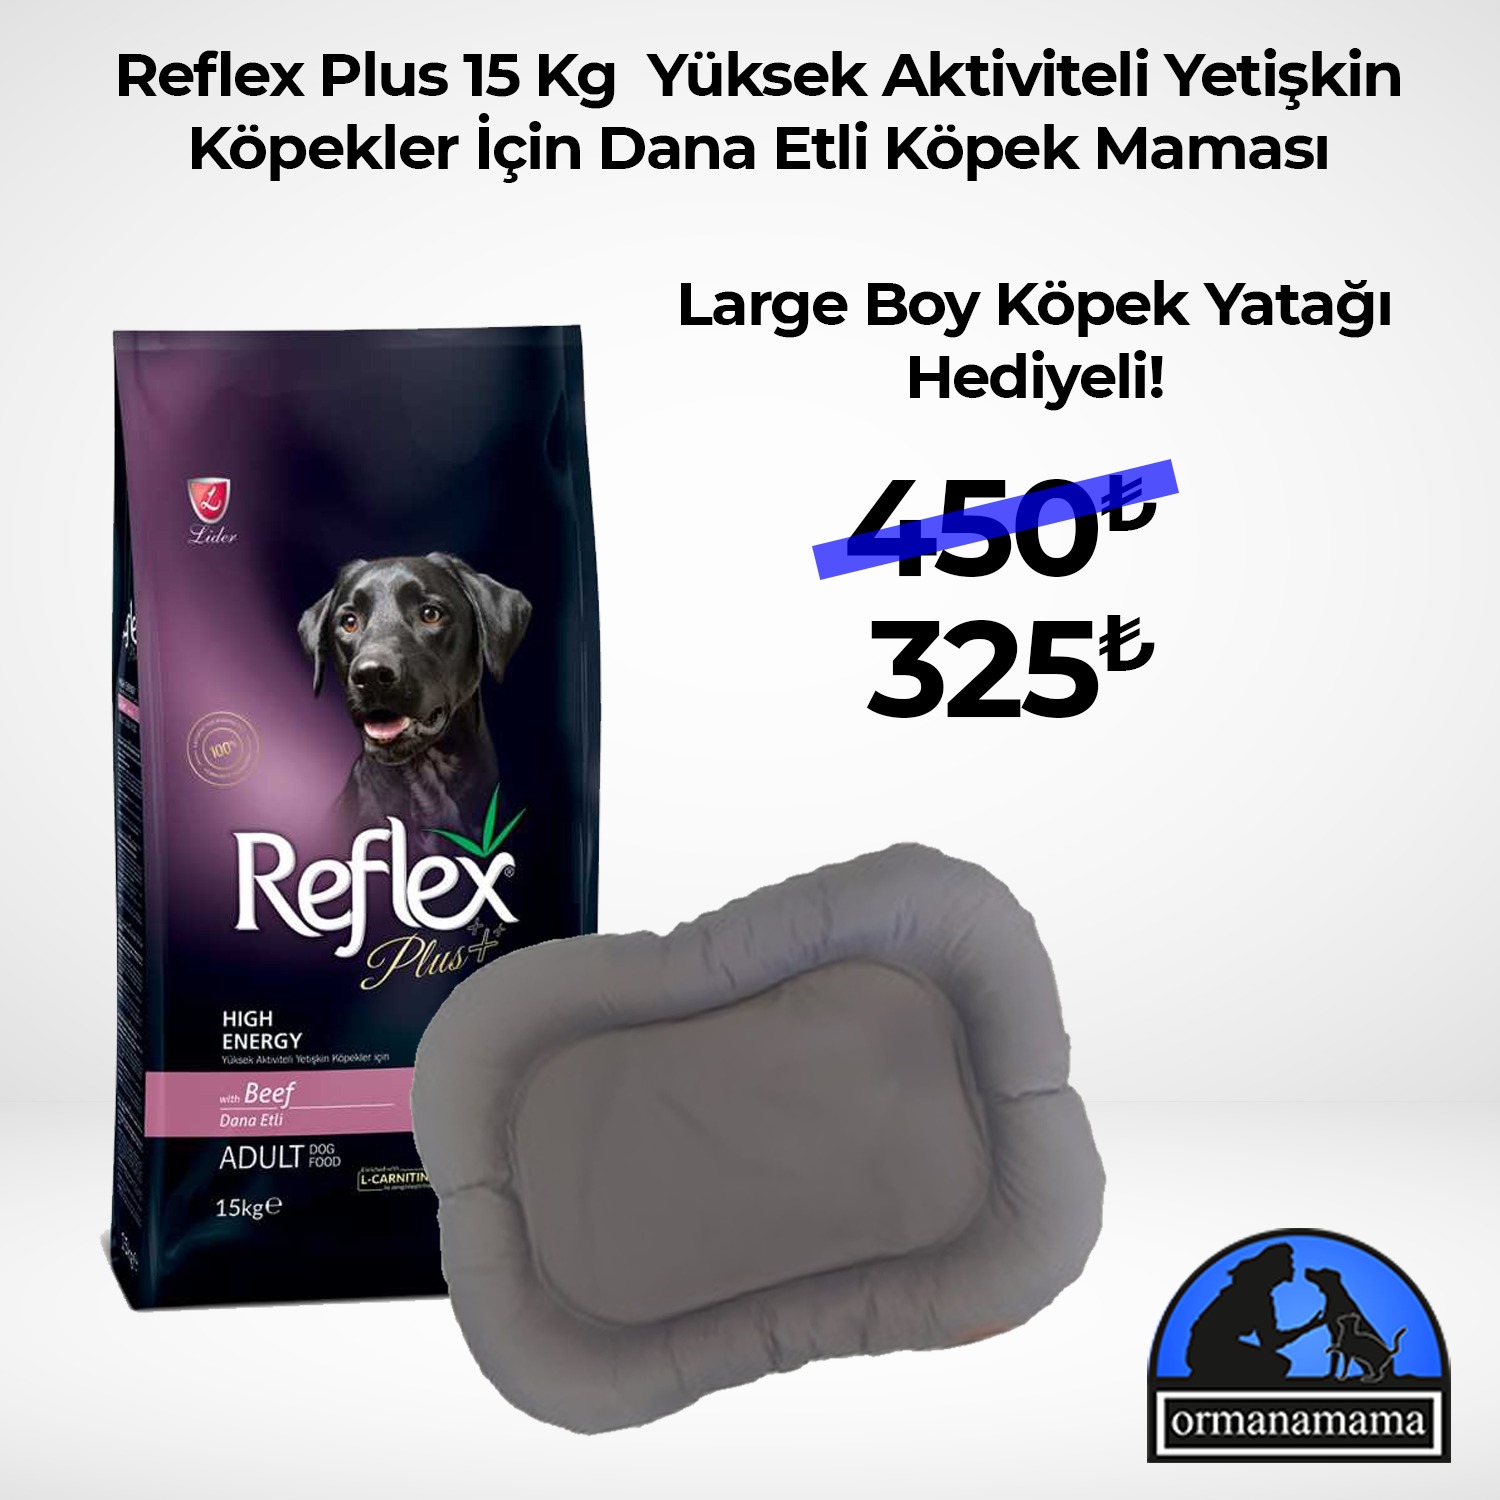 Reflex Plus 15 Kg Yüksek Enerjili Yetişkin Köpekler İçin Dana Etli + Large Boy Köpek Yatağı Hediyeli